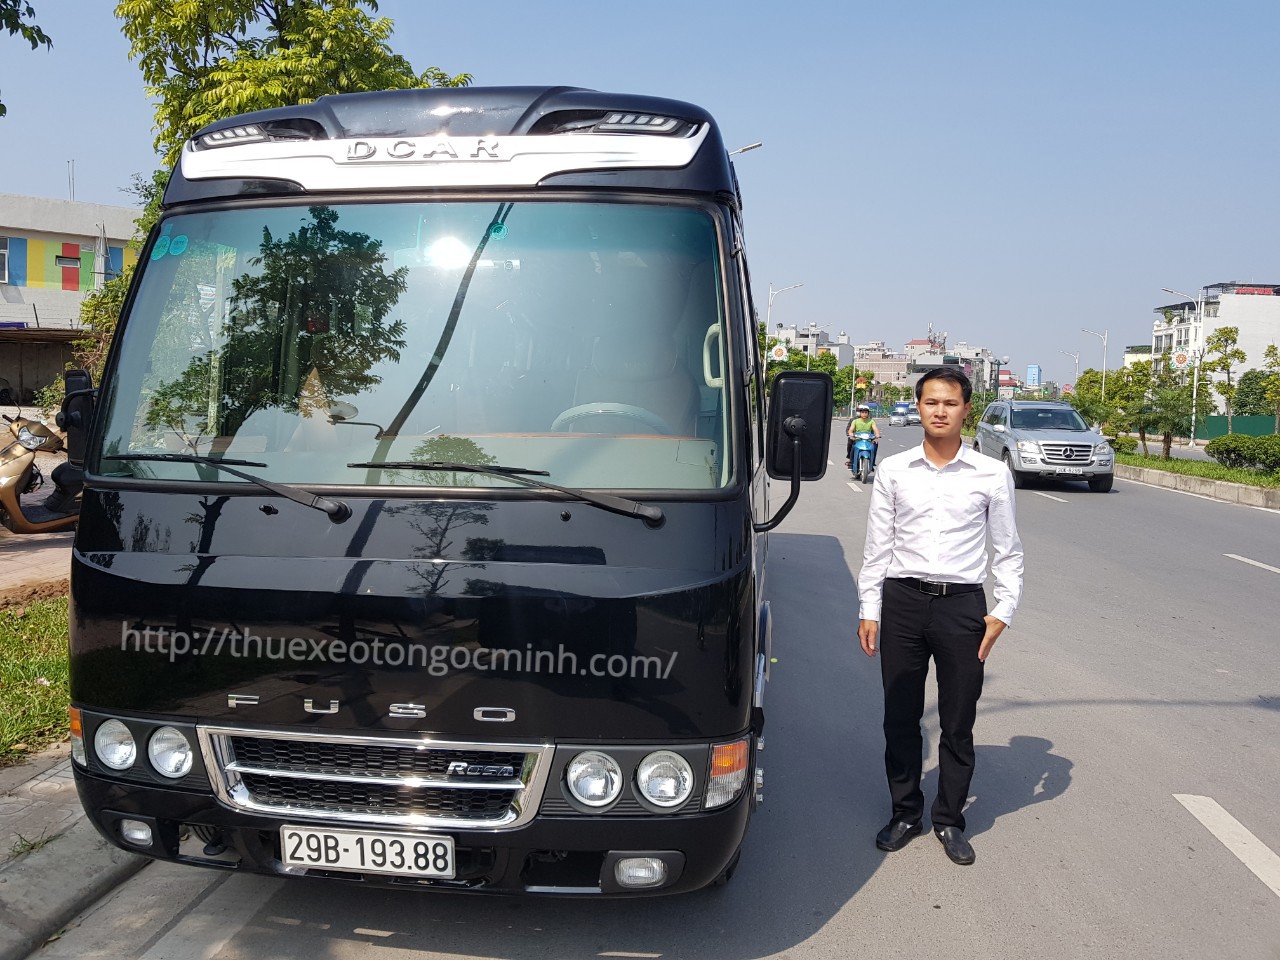 Thuê xe đi du lịch Huế giá rẻ, chất lượng tại Hà Nội